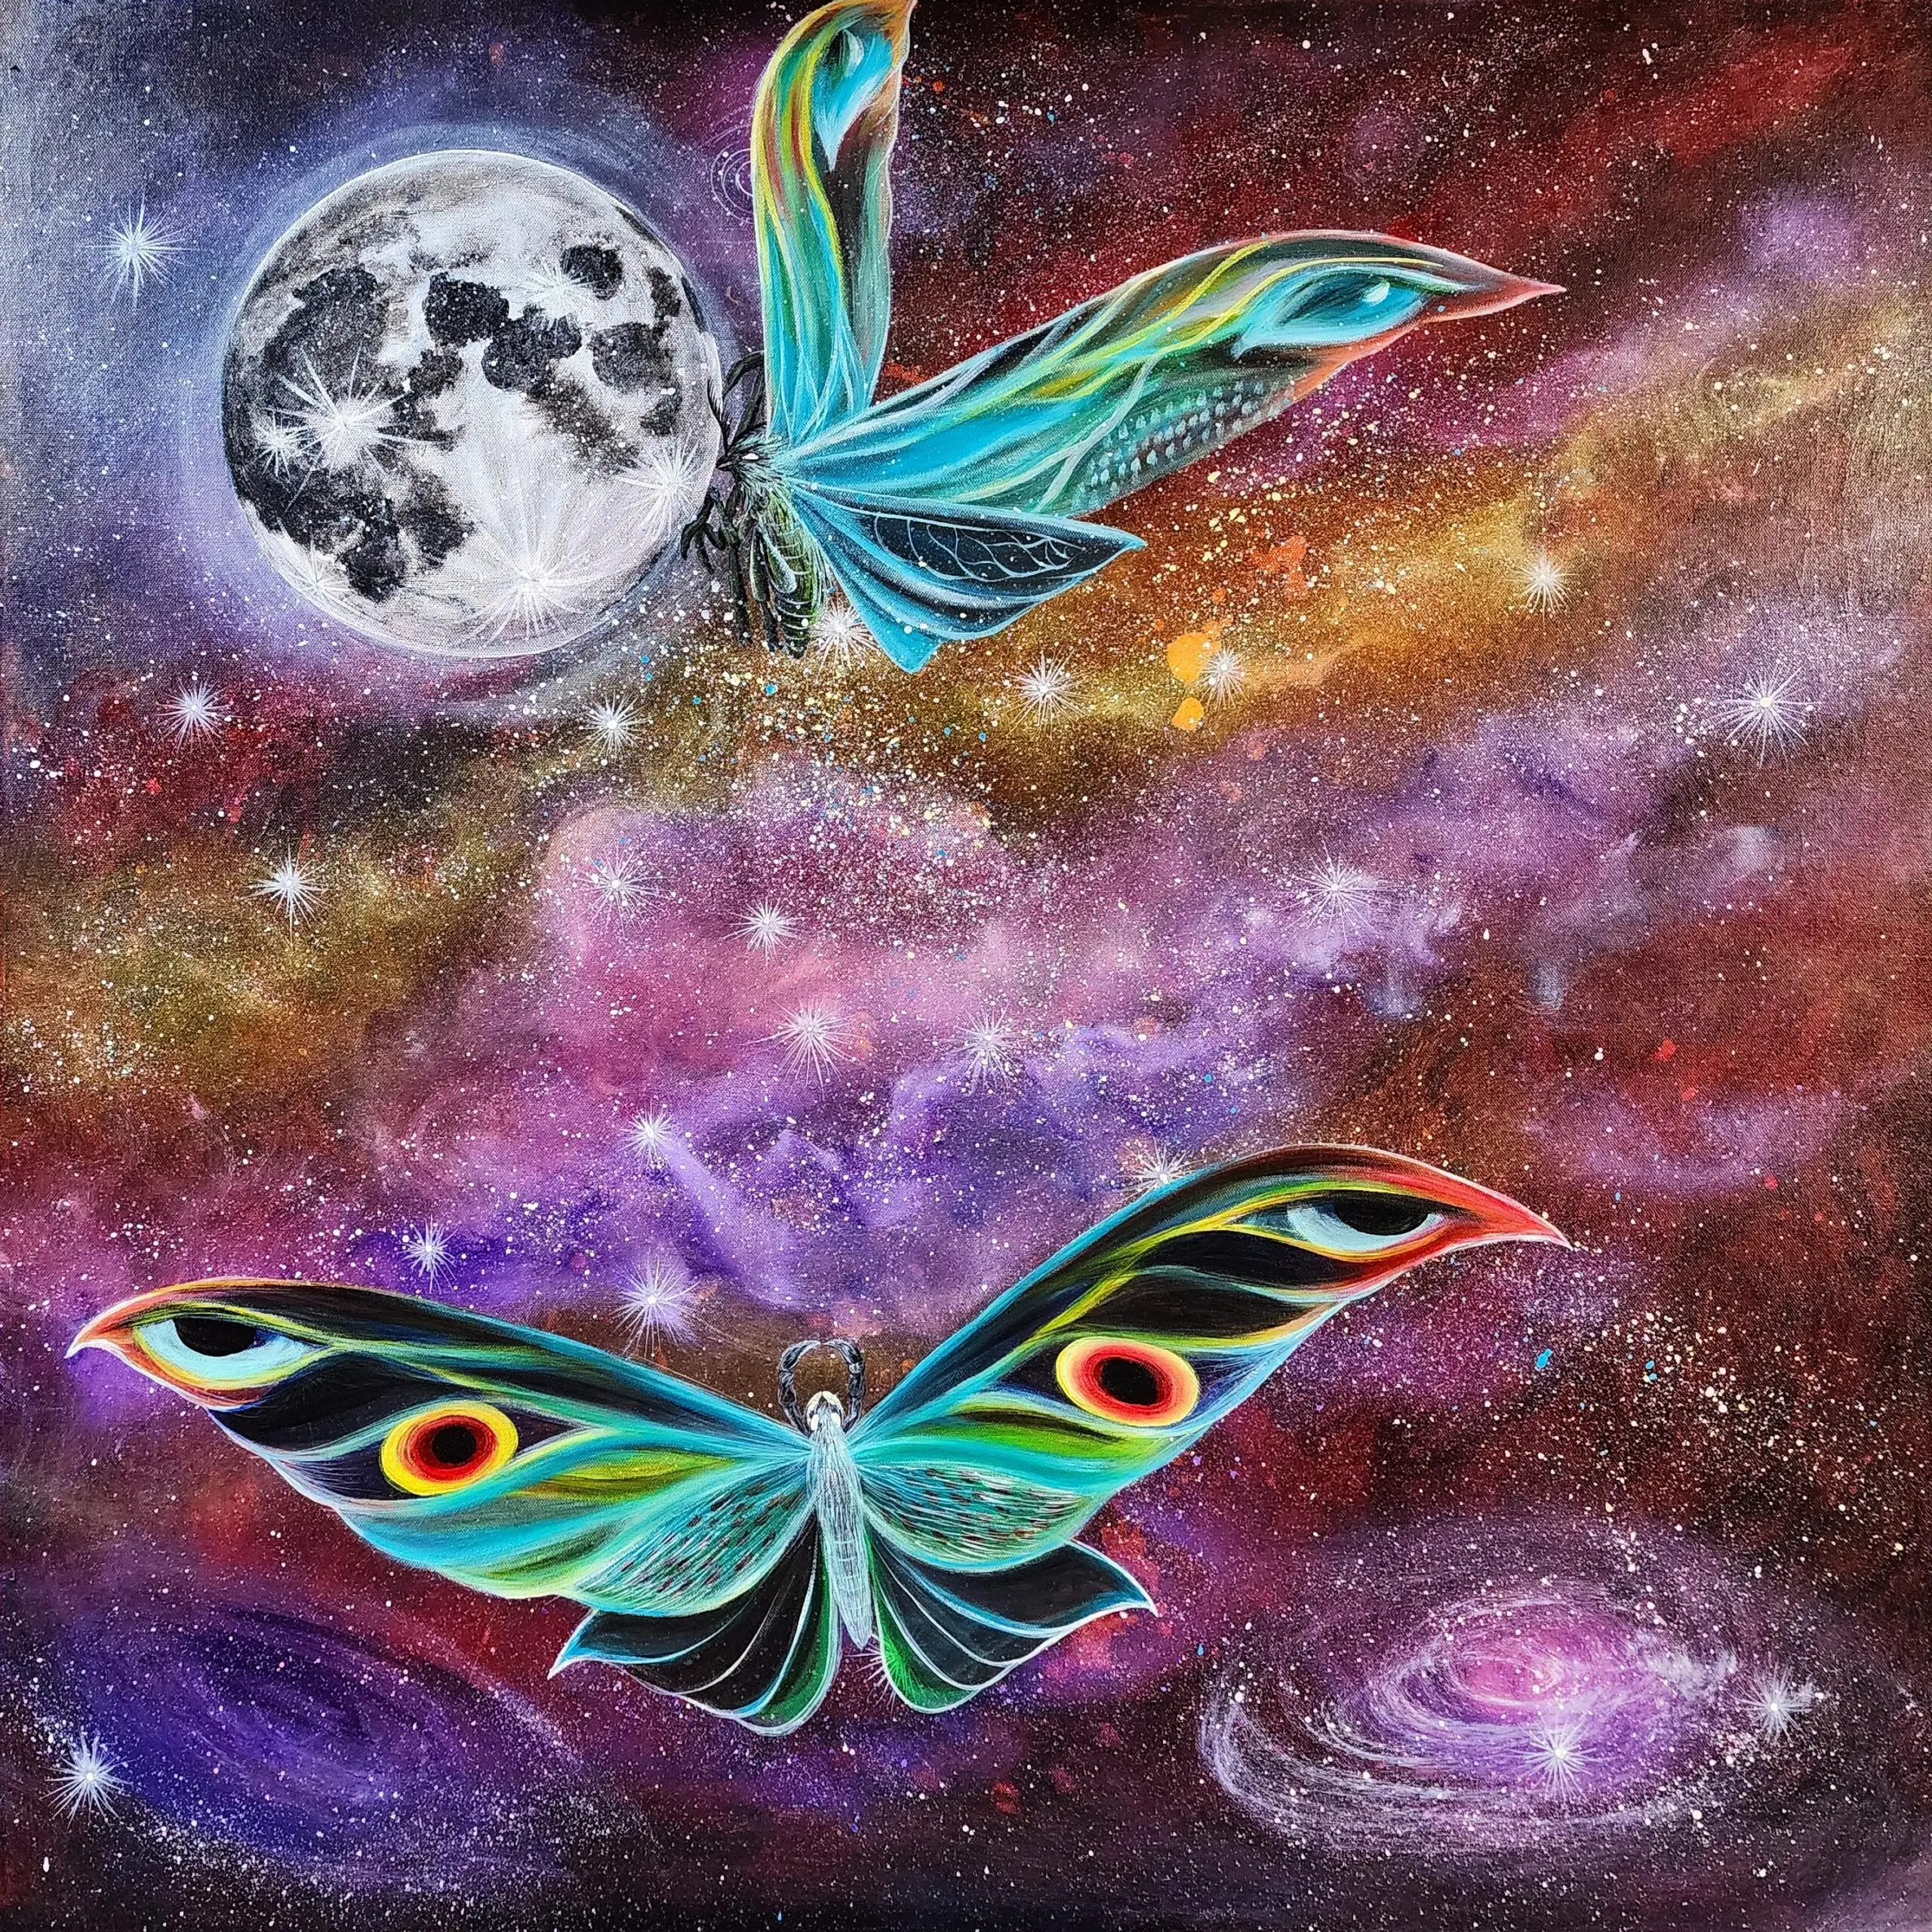 Renacer como la bella polilla #Mothra desde una oruga y luchar contra las adversidades. Impedir a la mente pensar en obstáculos y llegar a la luna si es posible, el universo es infinito e inmenso, vuela, explora y que las barreras jamás detengan tu imaginación y tus metas.